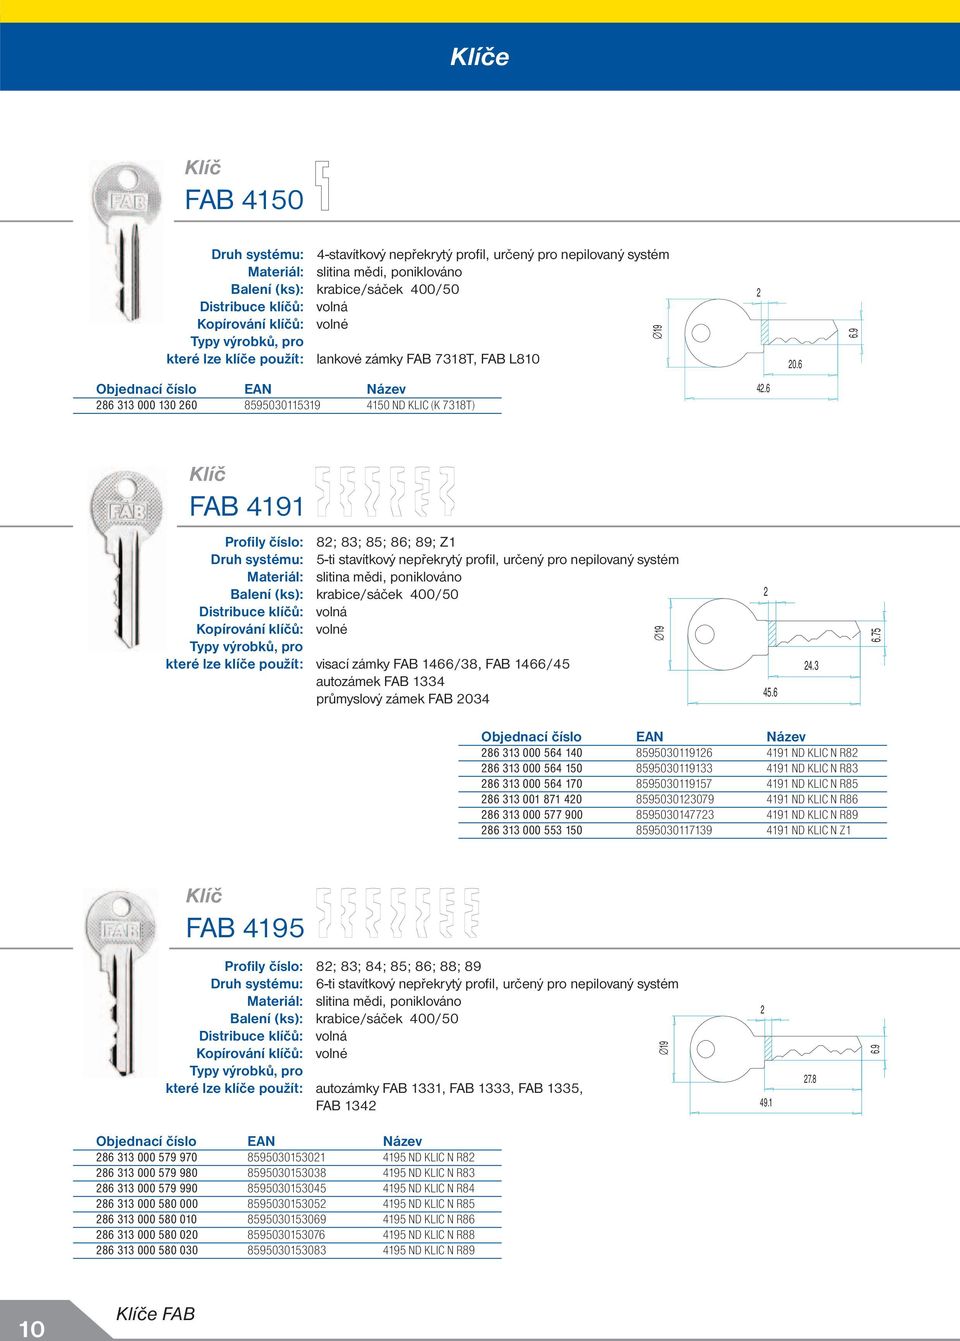 6 FAB 4191 Profily číslo: 8; 83; 85; 86; 89; Z1 Druh systému: 5-ti stavítkový nepřekrytý profi l, určený pro nepilovaný systém které lze klíče použít: visací zámky FAB 1466/38, FAB 1466/45 autozámek